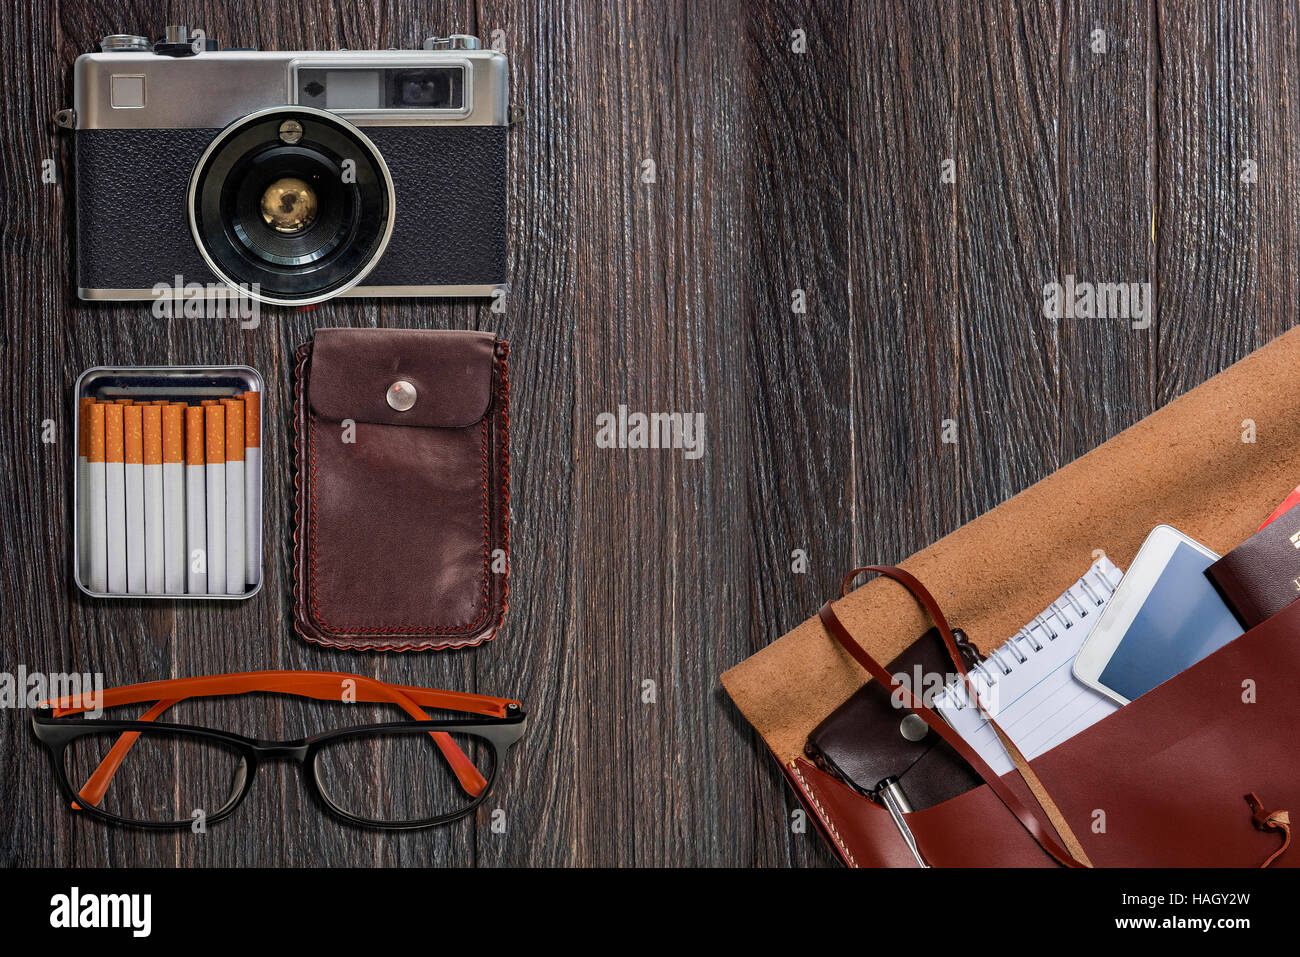 Reise-Zubehör, Kamera, Augen Brille, Handy Tasche, Pass, Zigarette auf schwarzem Hintergrund aus Holz. Bereit für die Reise Stockfoto